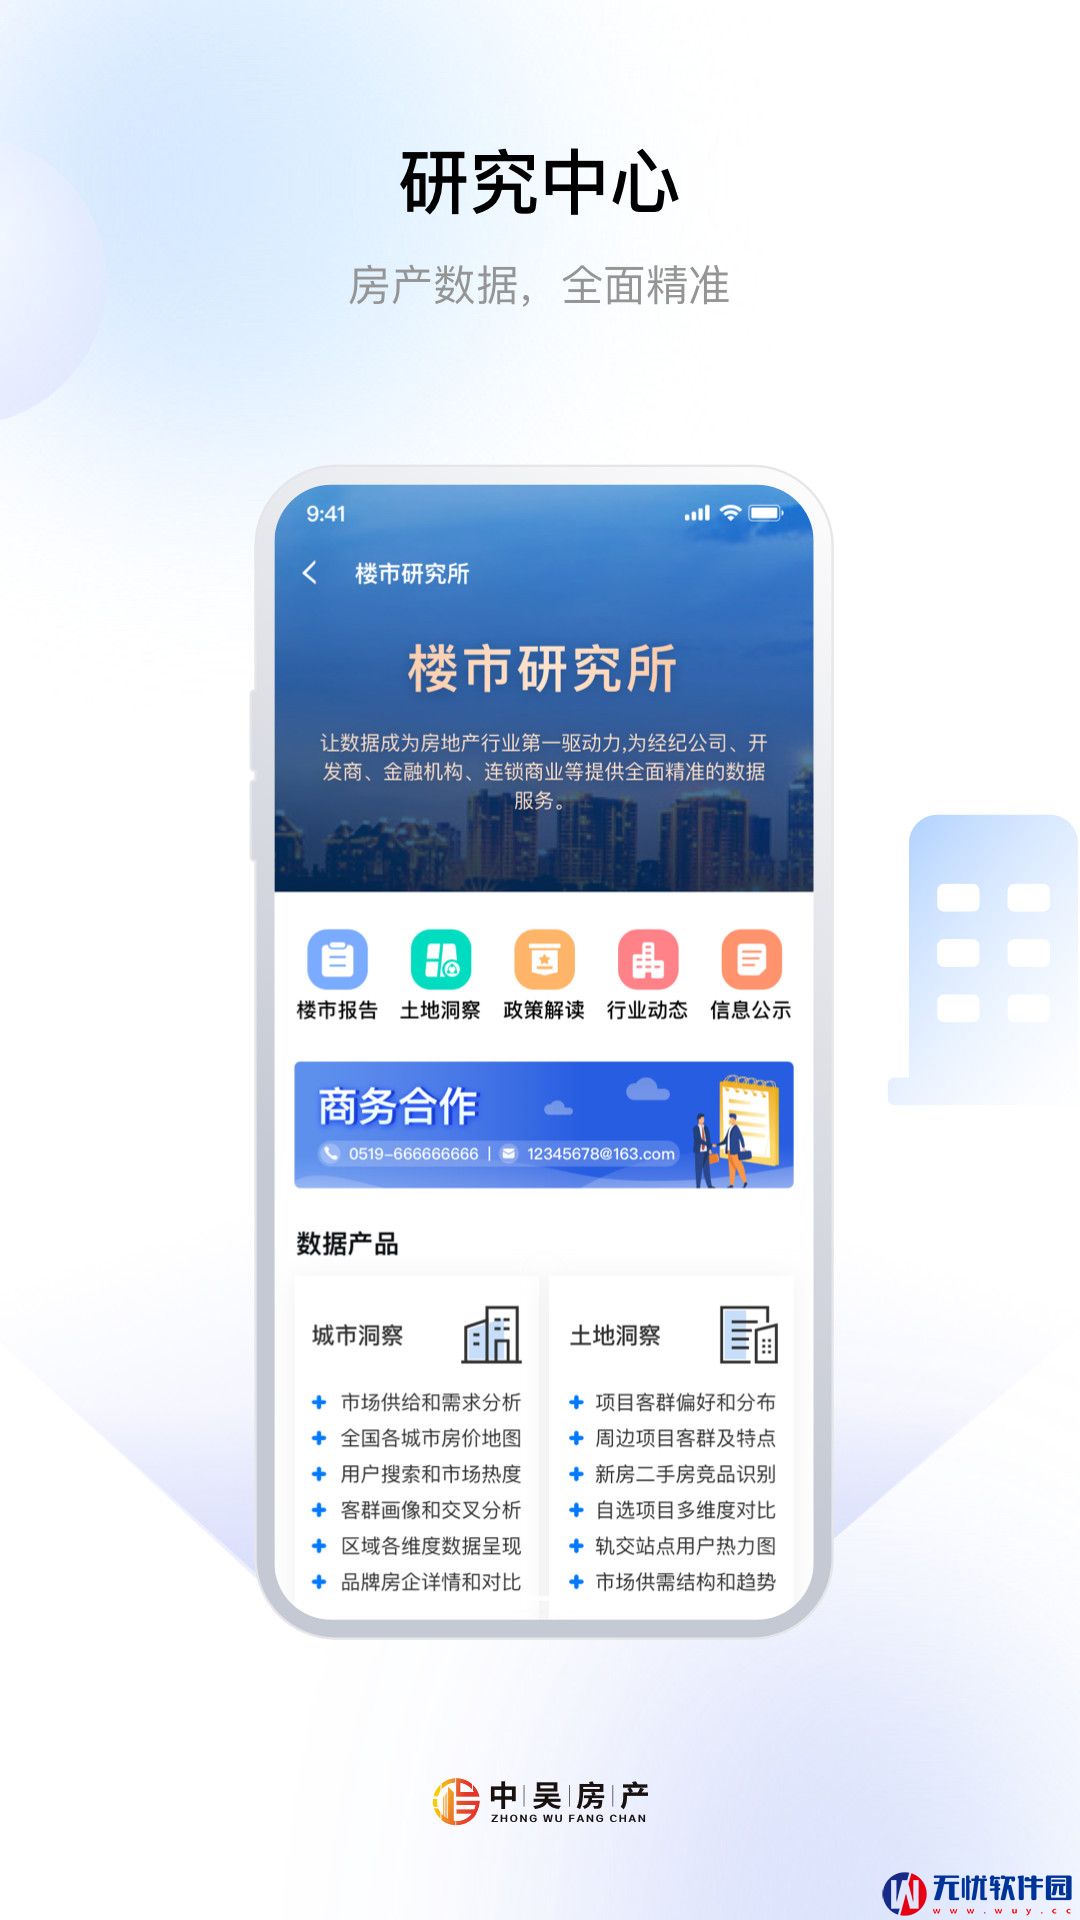 中吴房产手机版app图片1